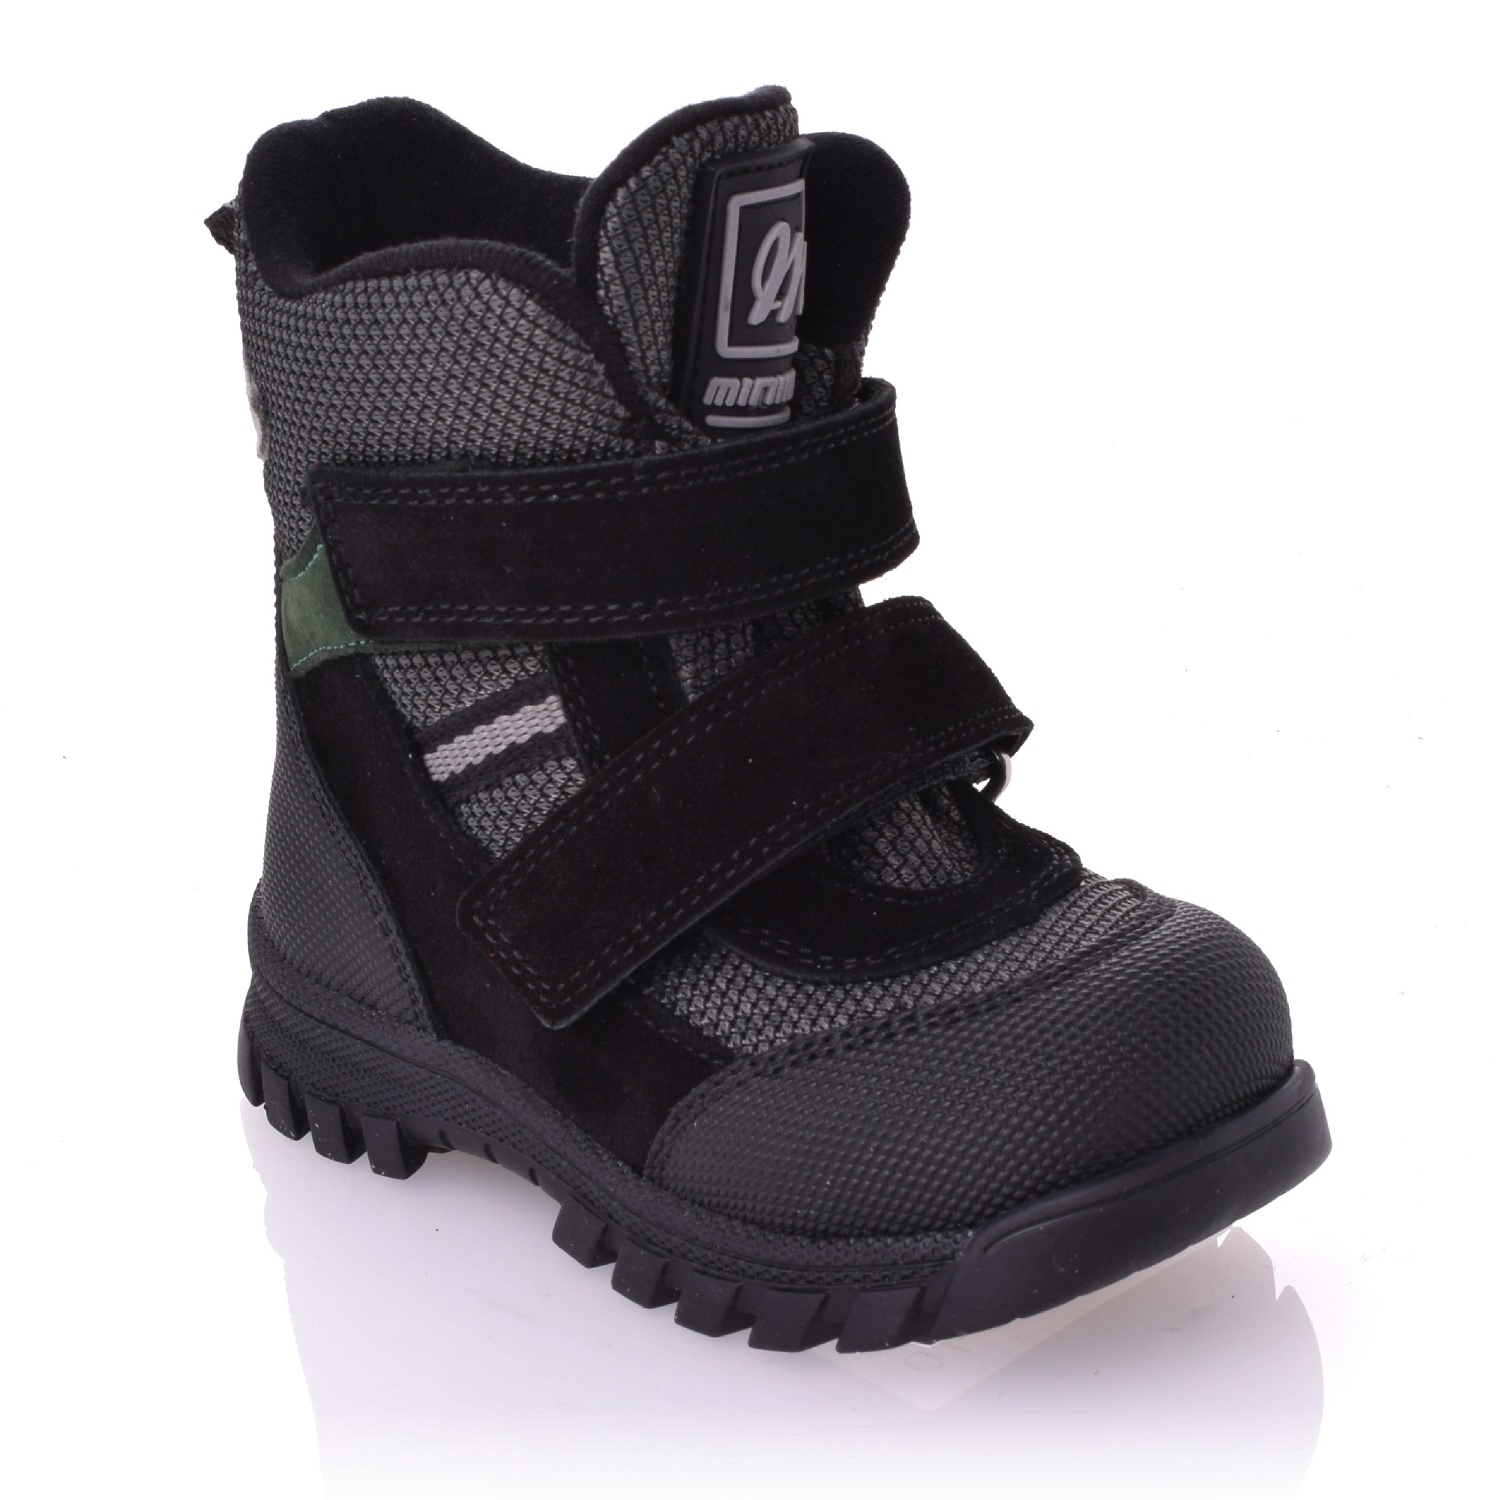 Дитячі зимові черевики для хлопчика 21 розміру (01-48-62-9B-01), Мinimen (мінім)